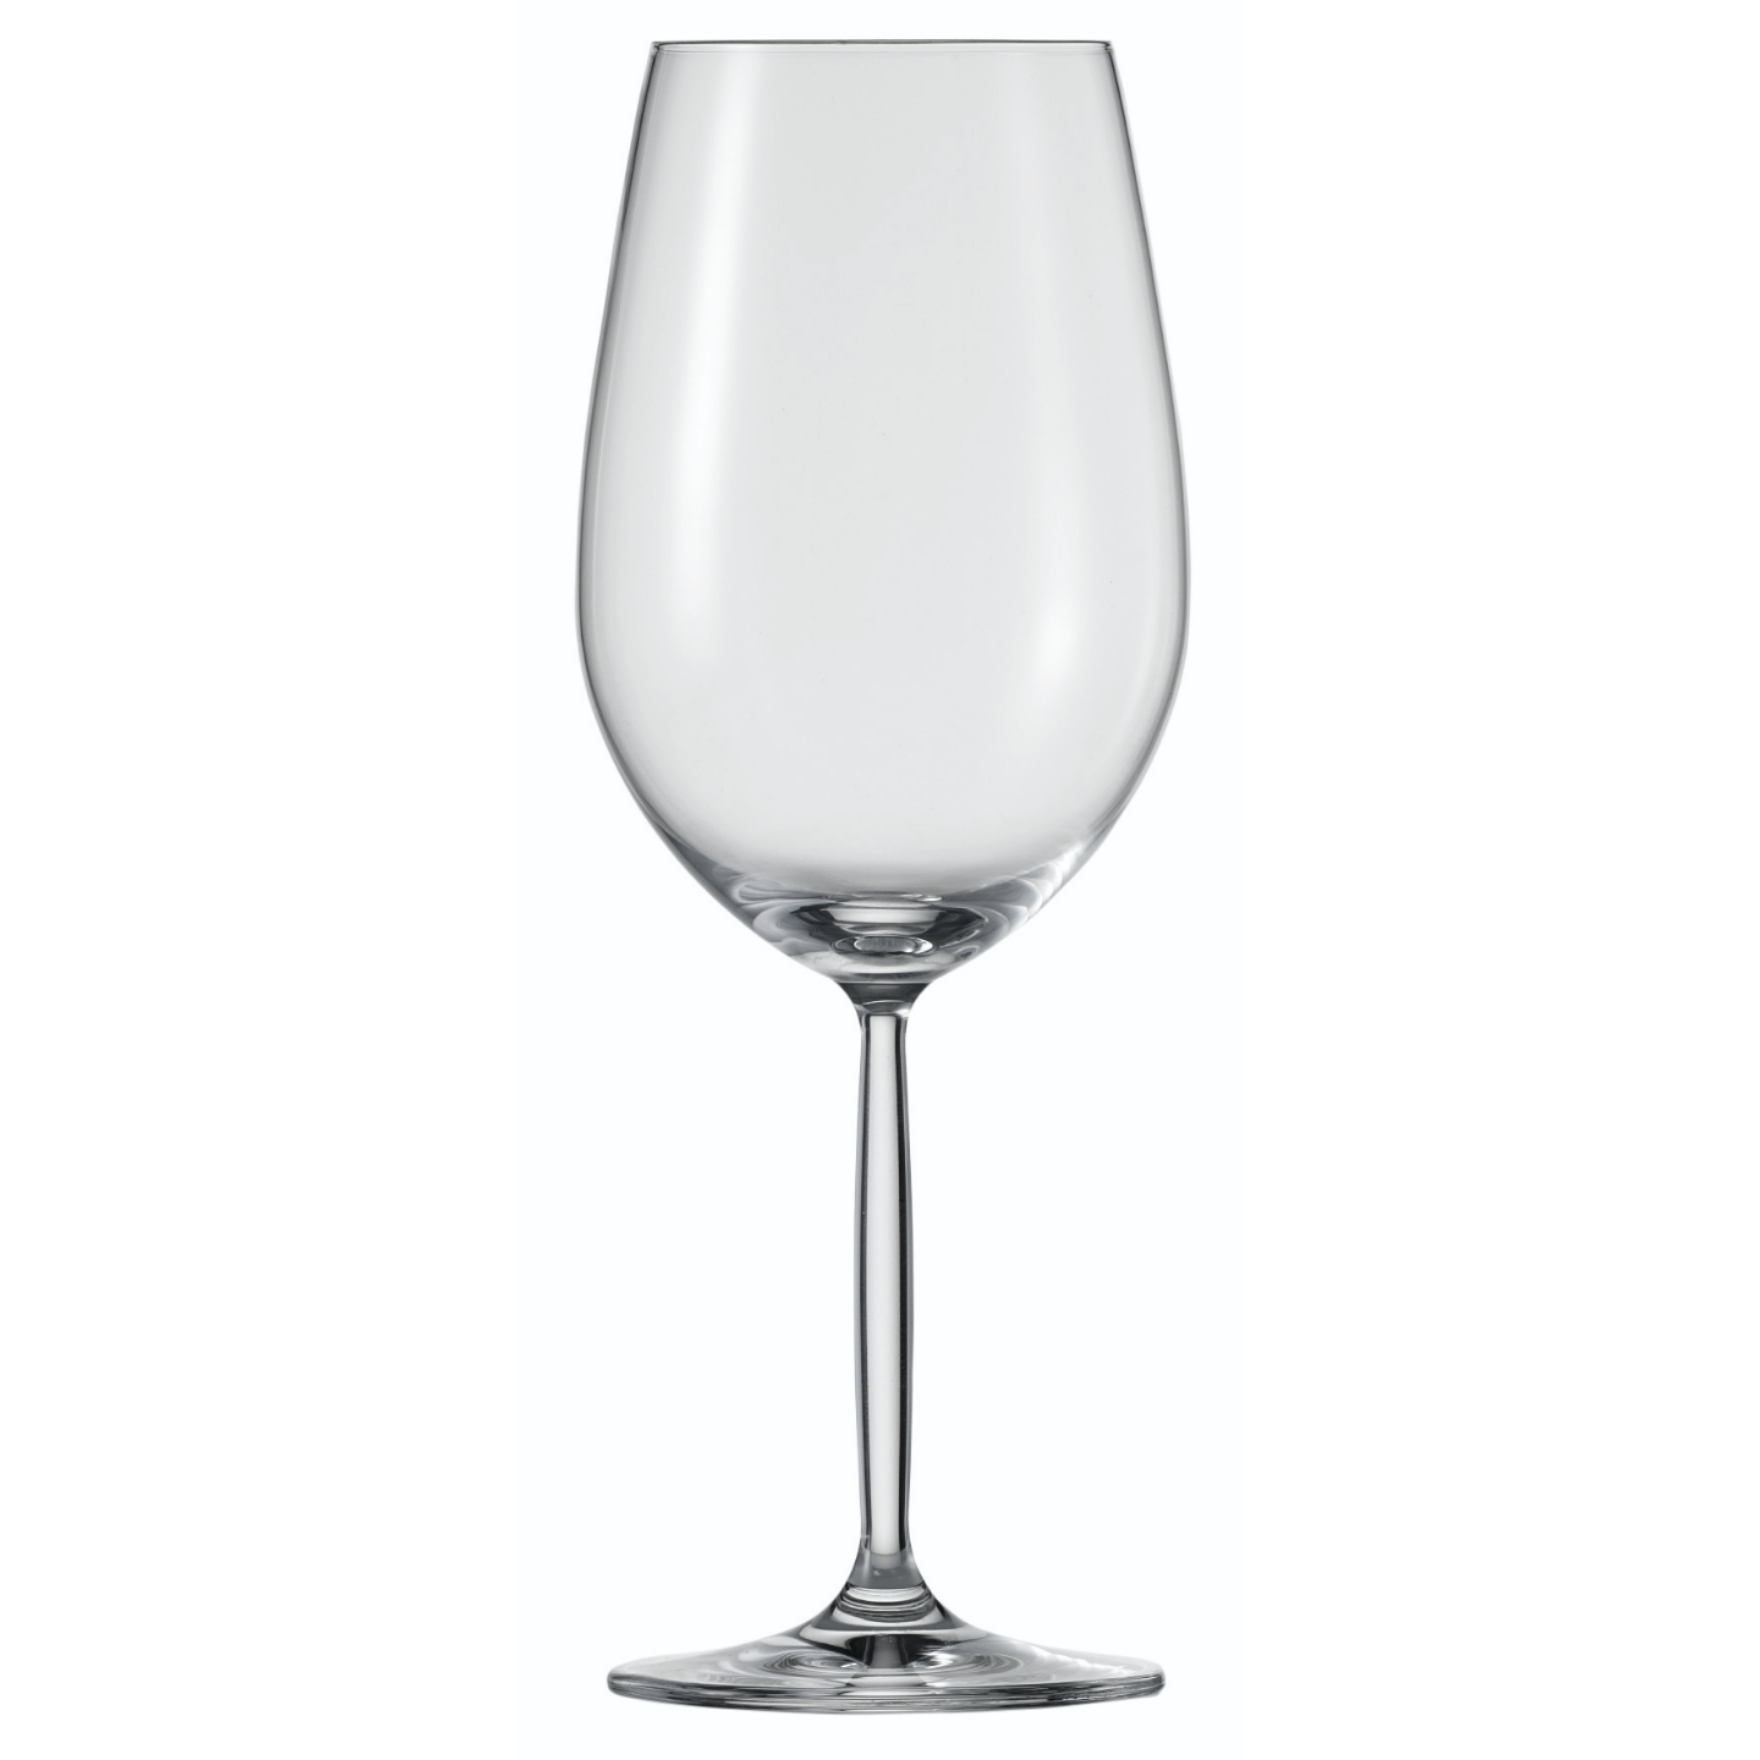 Slaapkamer Dubbelzinnig Lezen Schott Zwiesel Diva Bordeaux wijnglas 0.59 Ltr (€ 9.50 per stuk) –  Viervriendenwijn